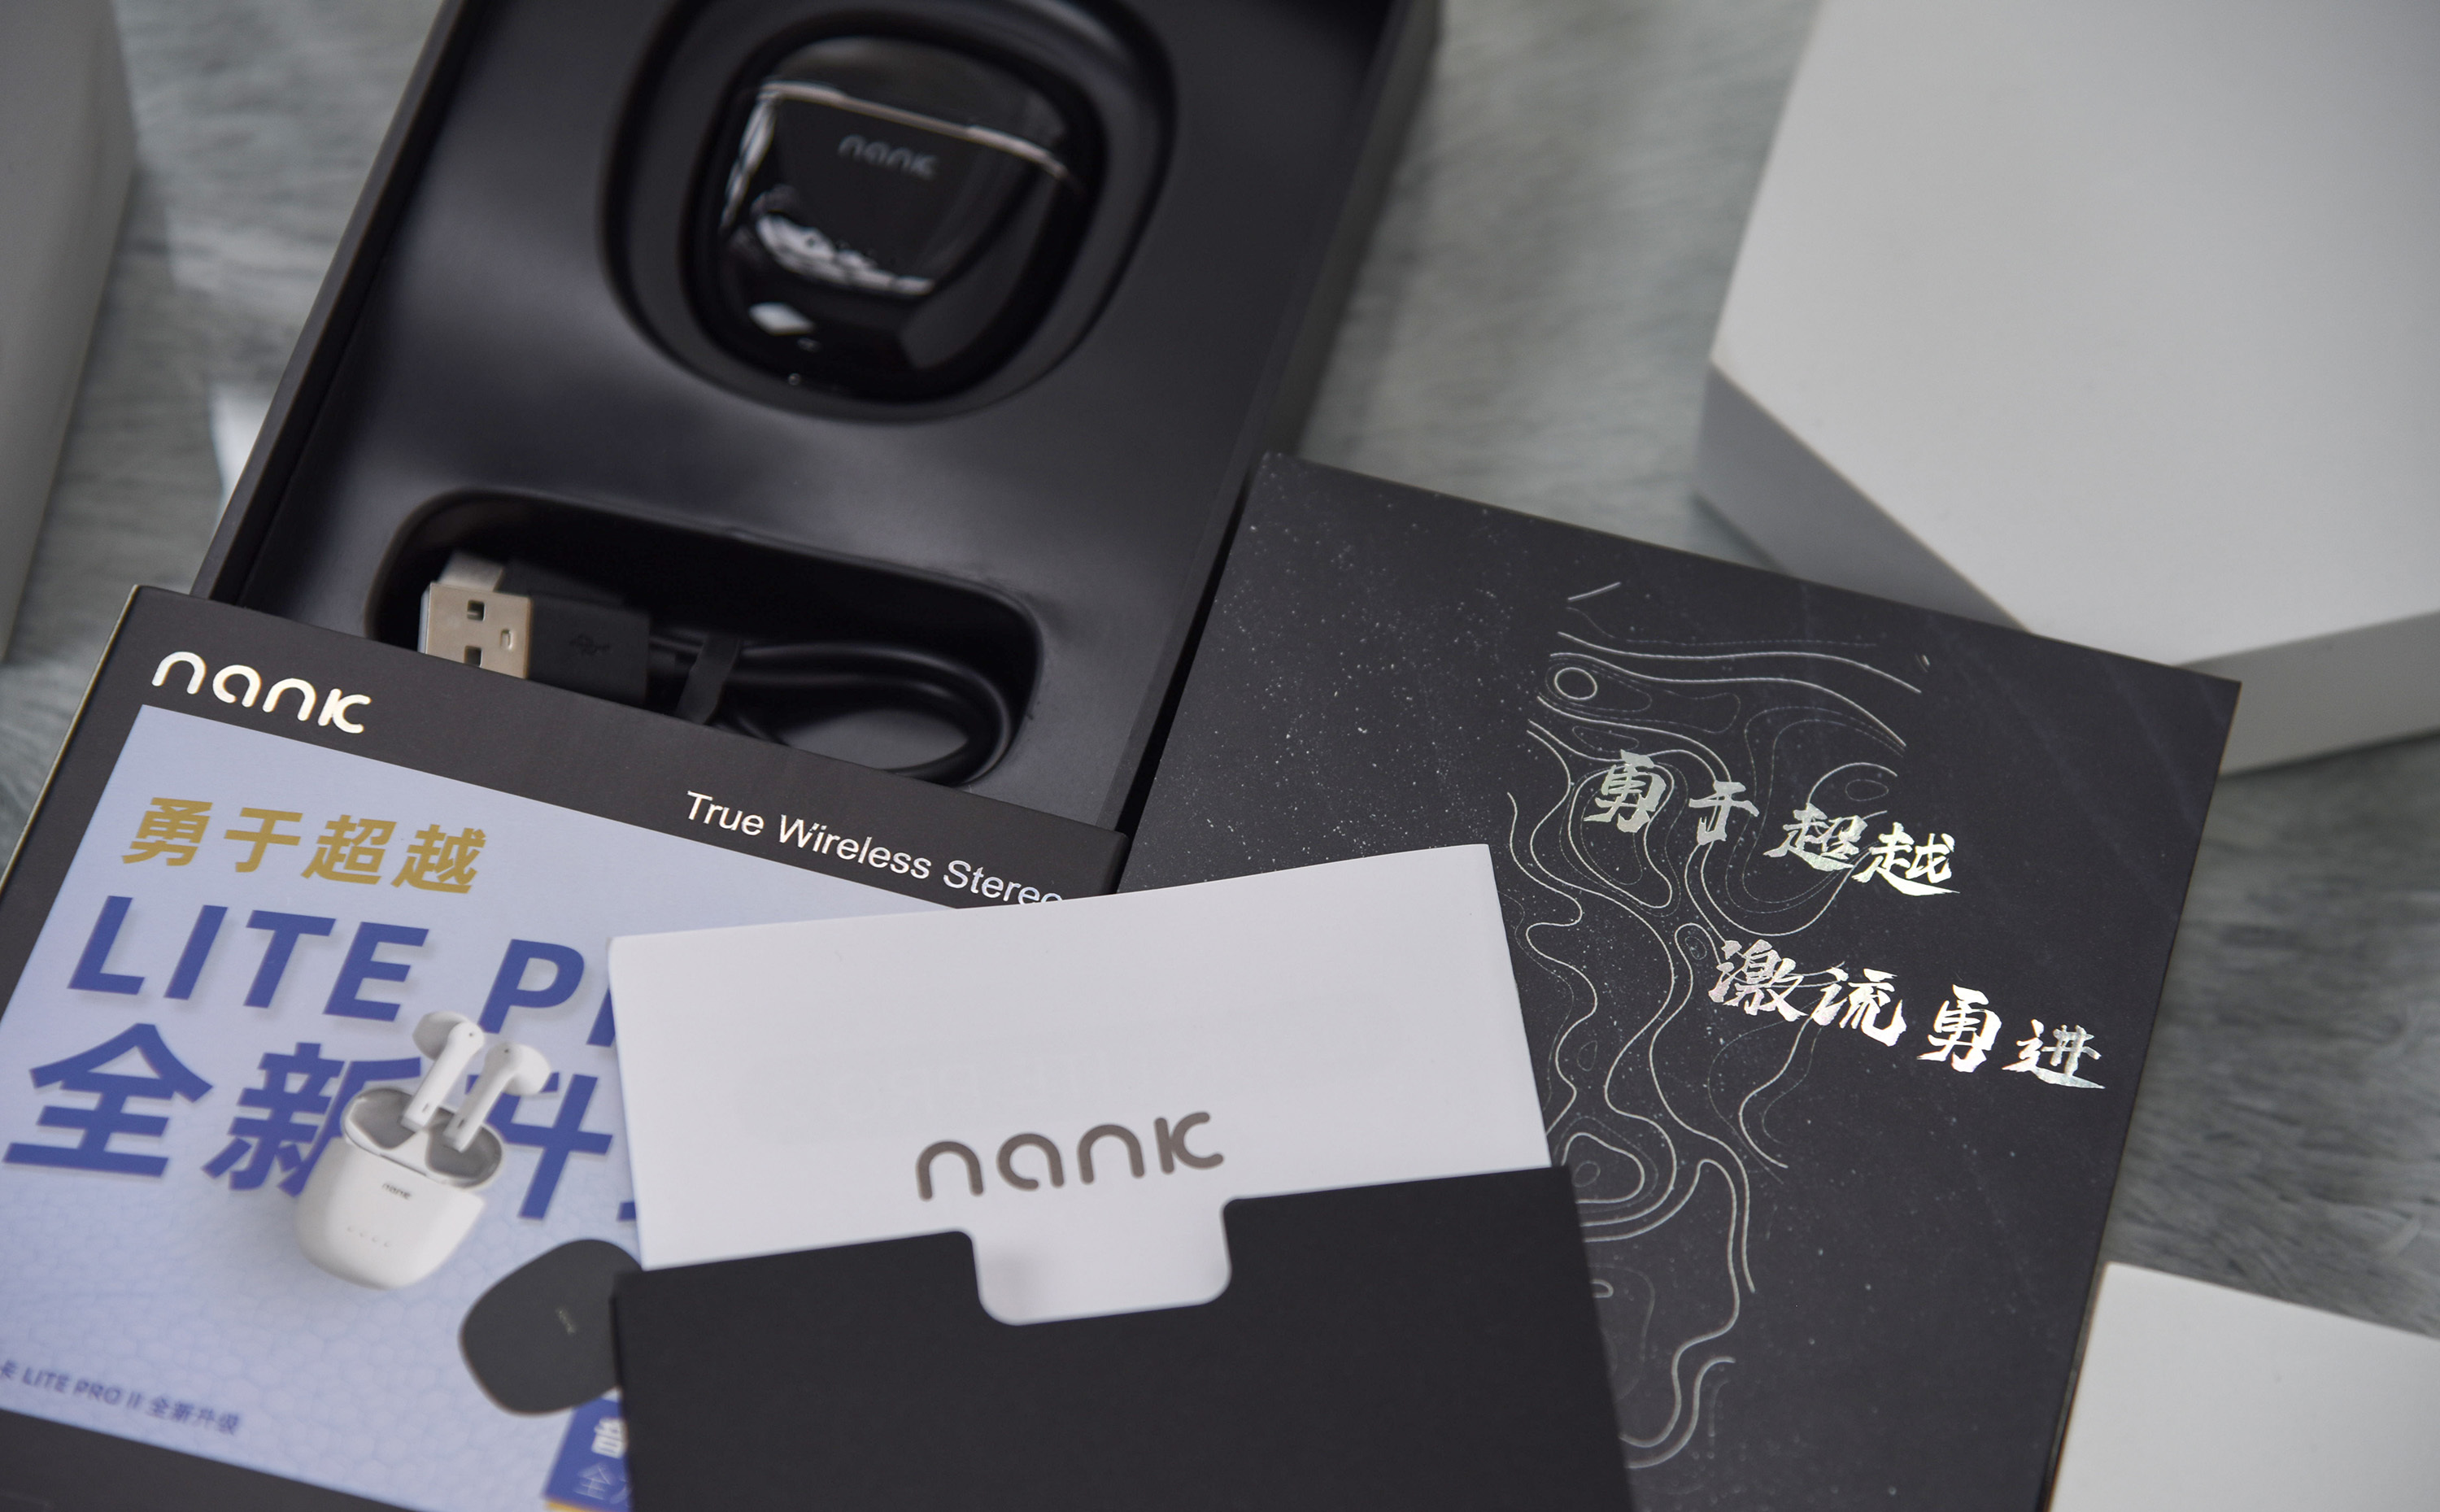 英雄联盟手游赛事推荐耳机 NANK南卡Lite Pro2真无线耳机体验  第3张